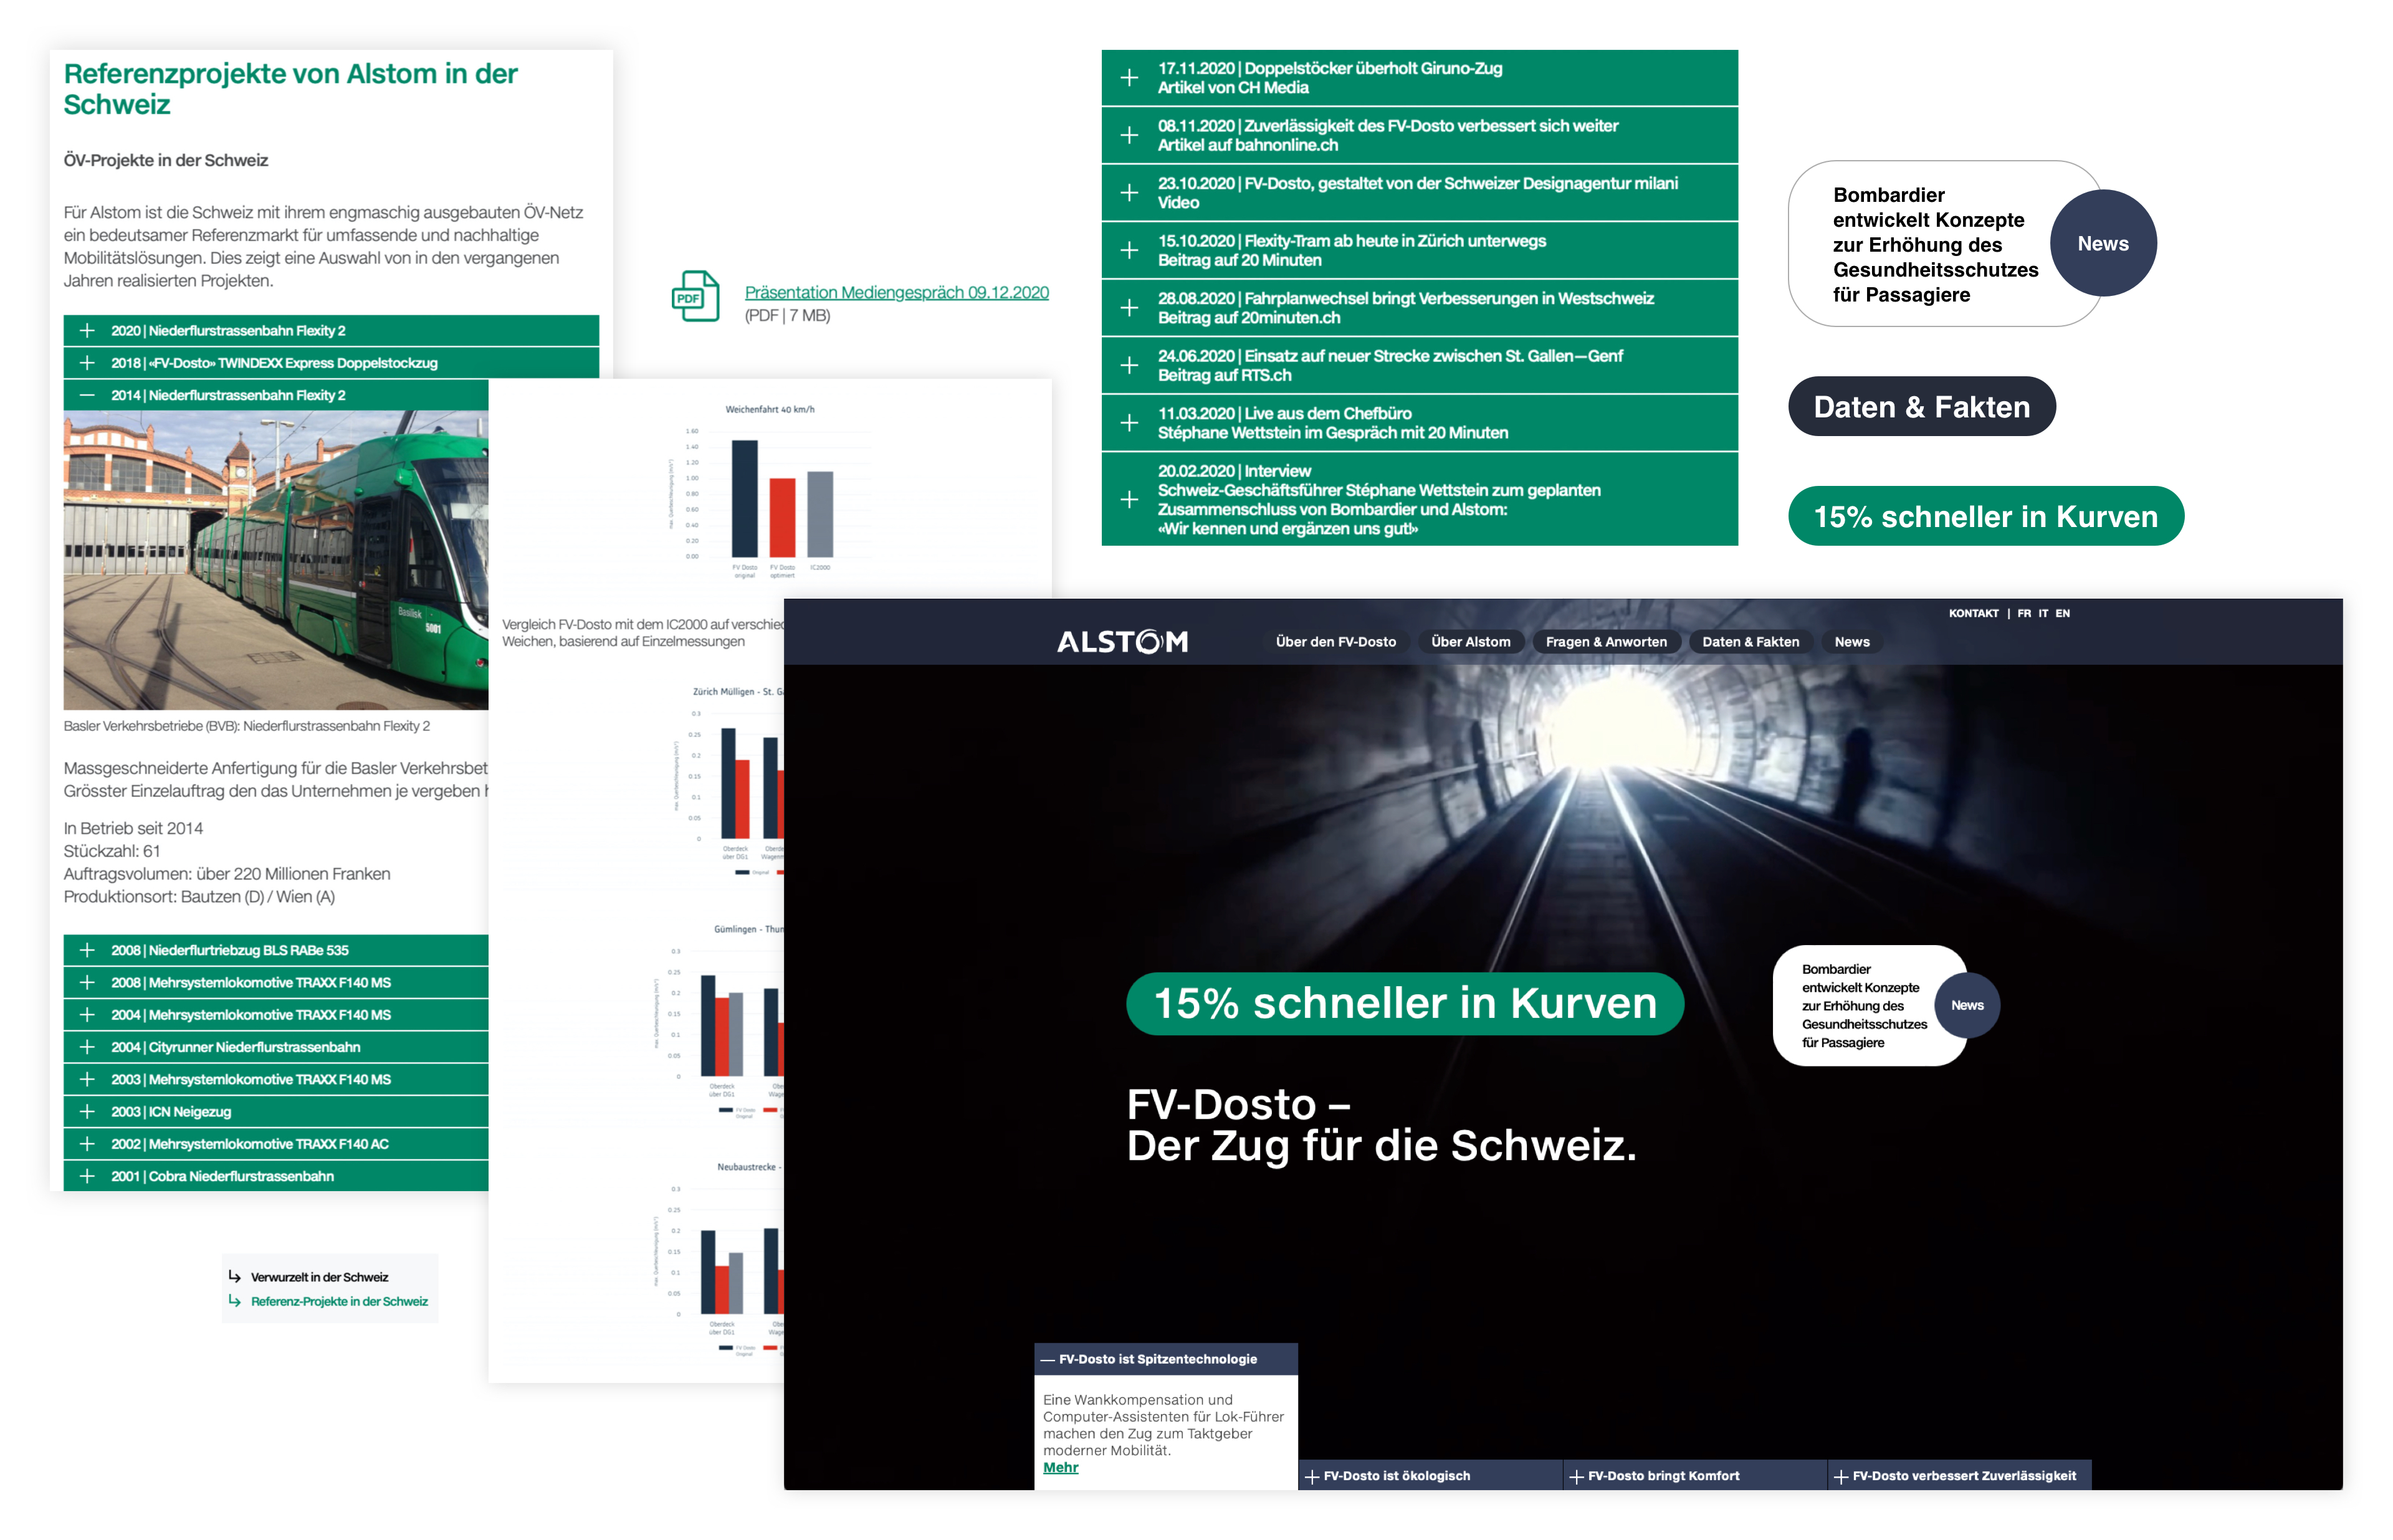 Abbildung: Die Abbildung zeigt den visuellen Leitfaden der Swissdosto-Website von Alstom in Form eines Mini-Guides.